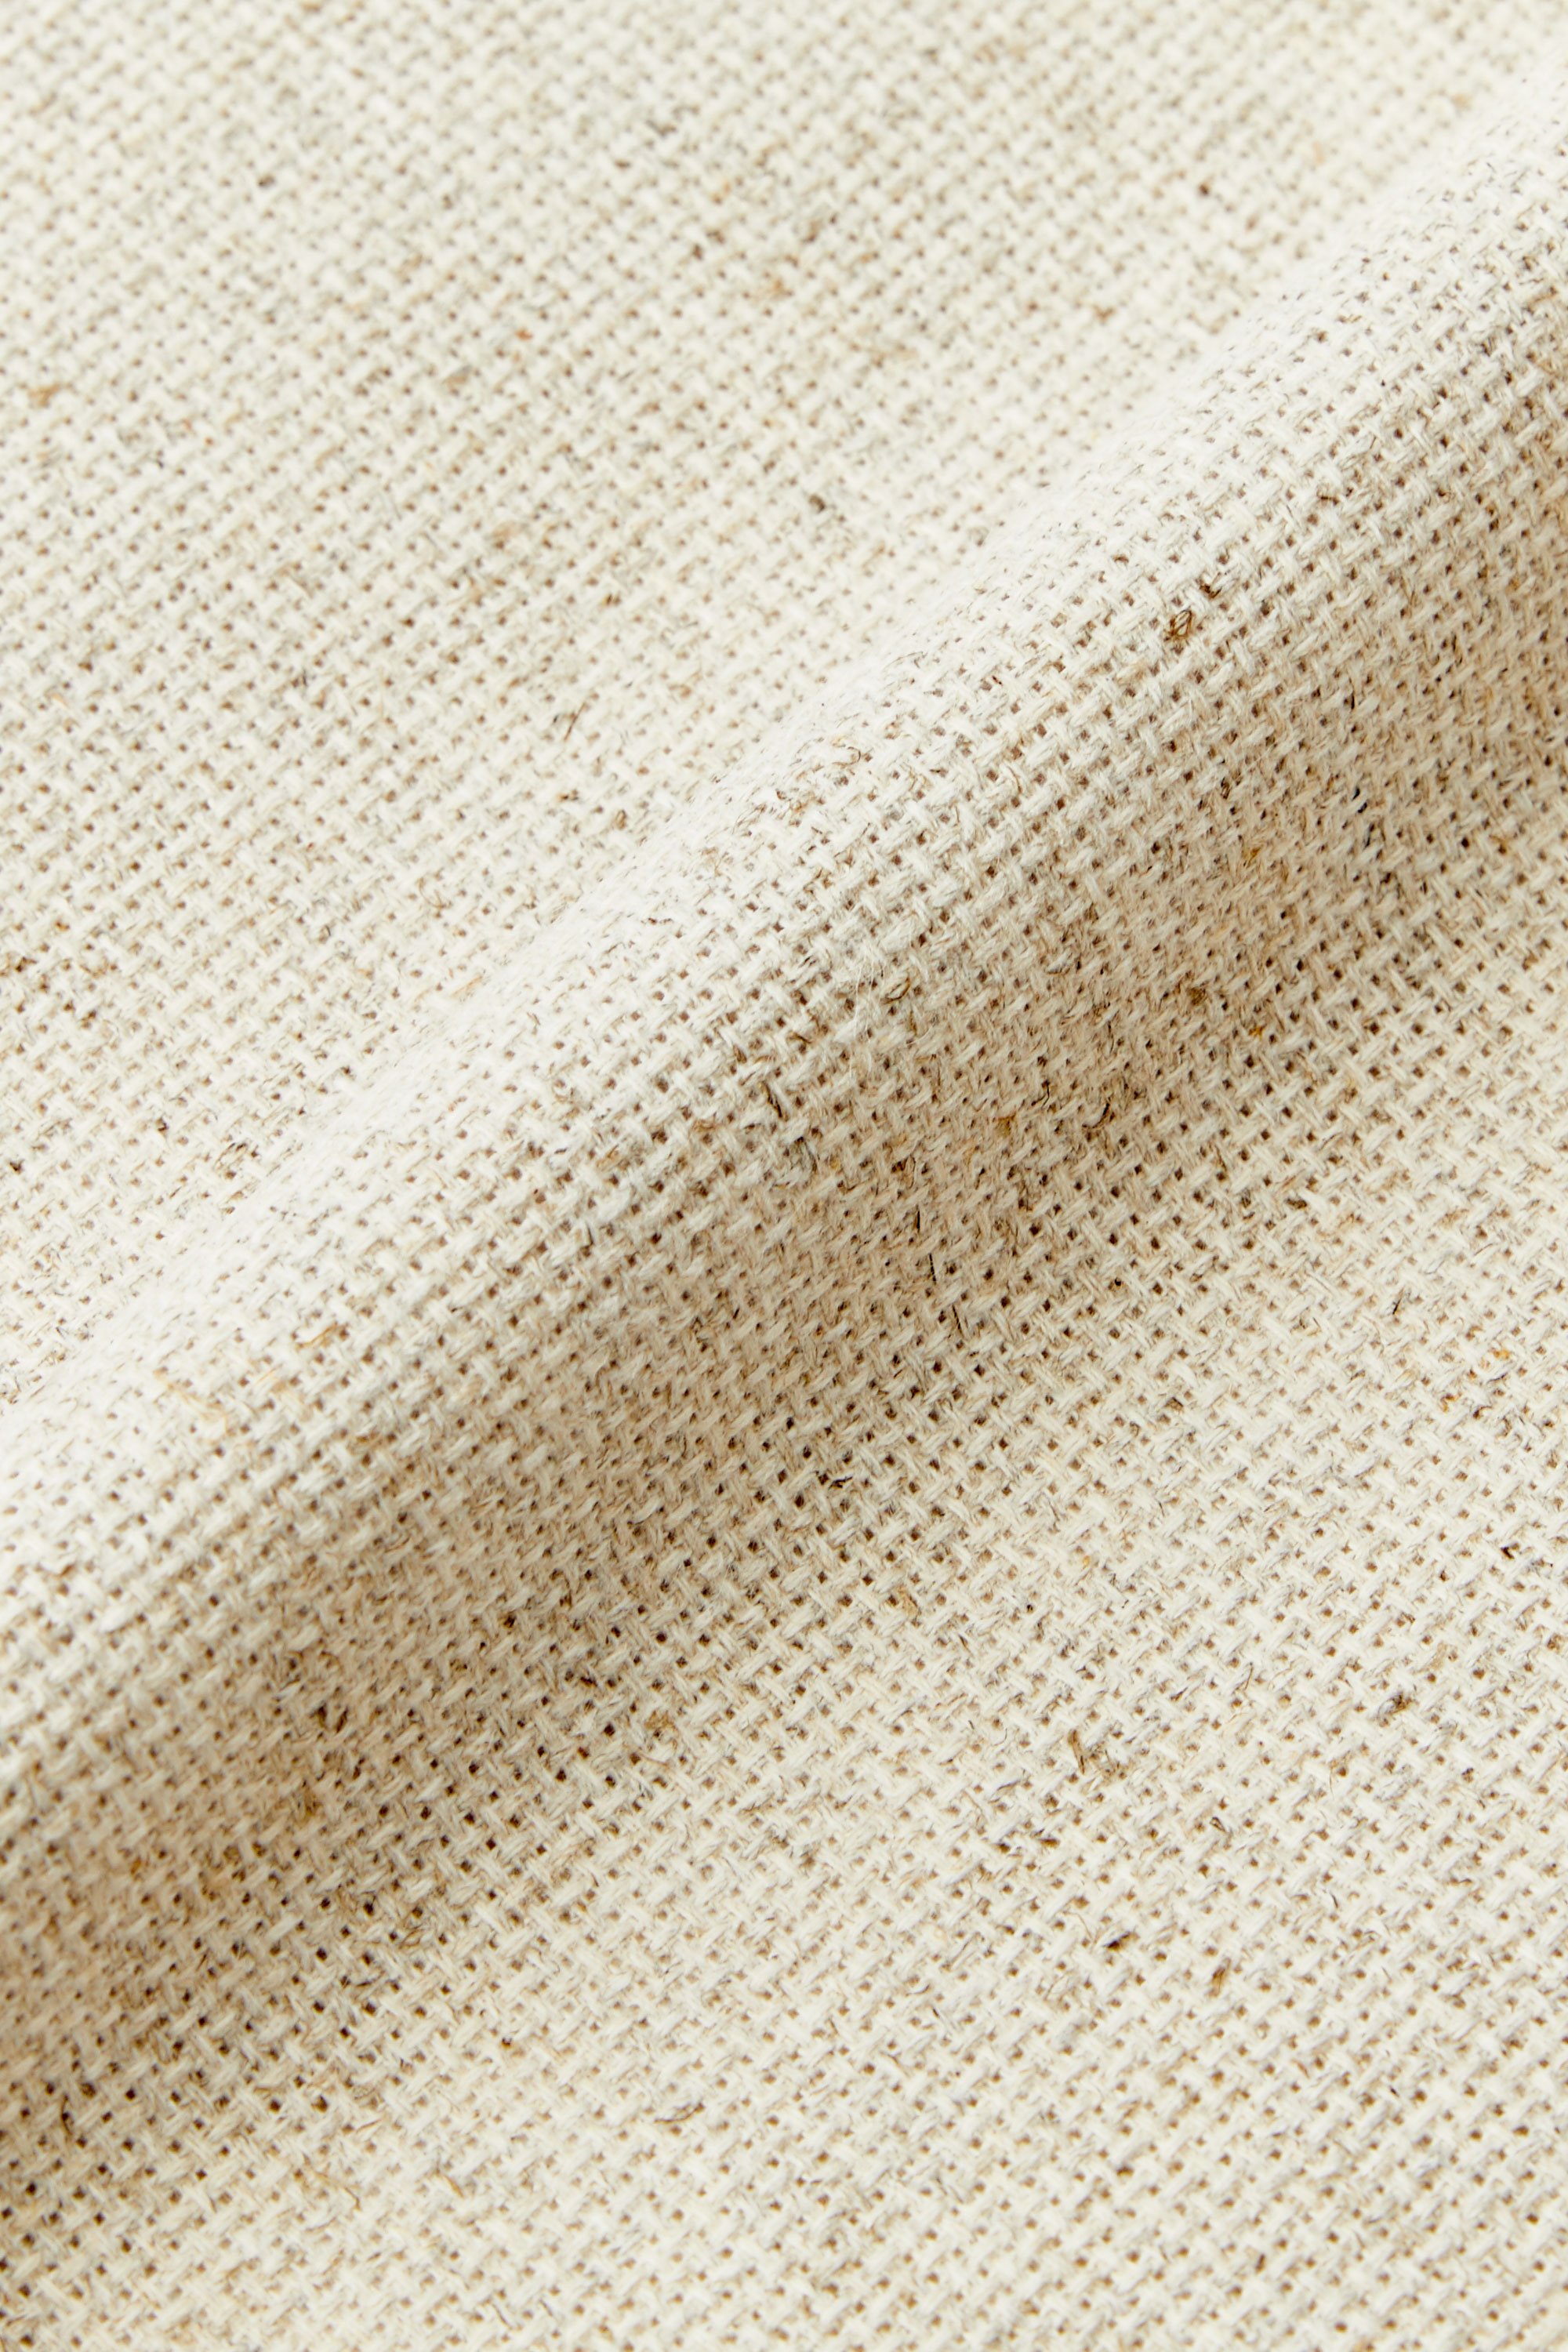 TTSJSM Toile Aida,Tissu Broderie Blanc 11ct 11st 14St 14ct Tissu Tissu Tissu Blanc 100cmx 50cm Cross Stitch Fabric CT Number : 11CT, Size : 50x50cm